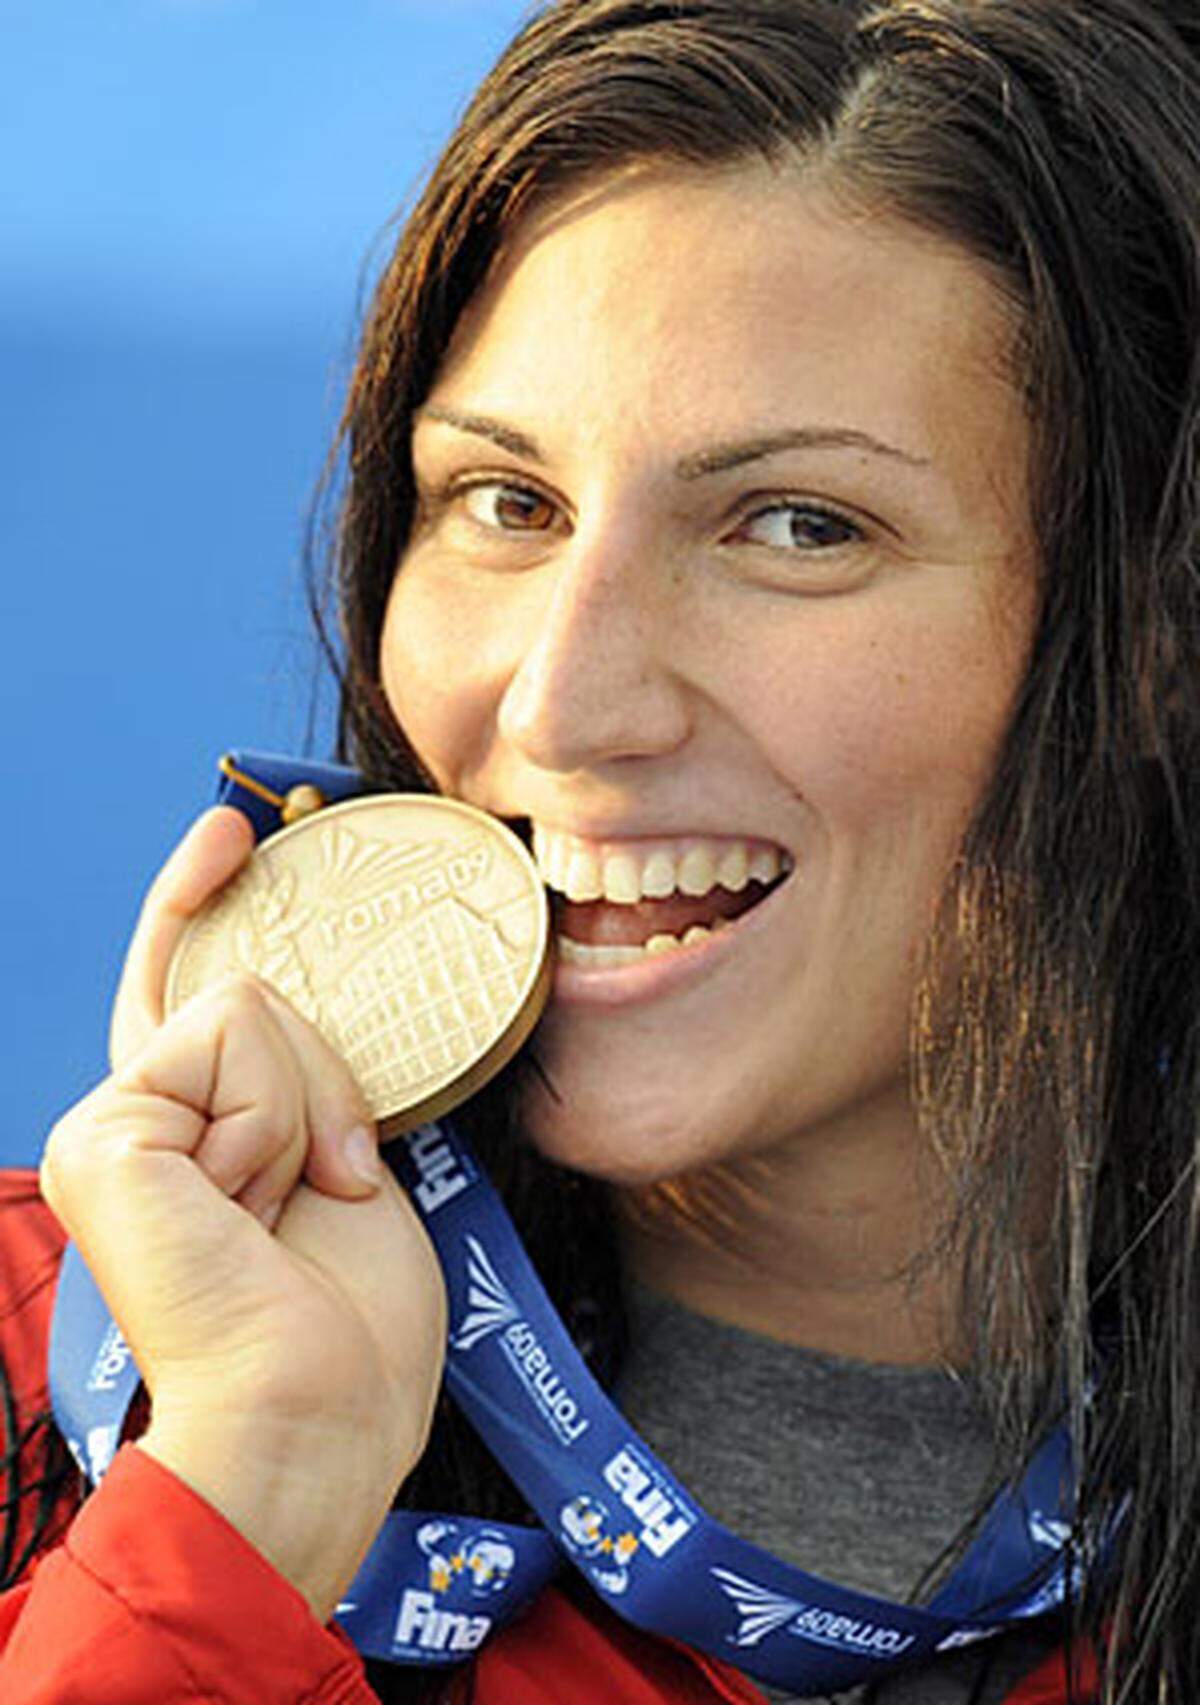 Die 24-jährige Schwimmerin Mirna Jukić ist gebürtige Kroatin. Im Jahr 1999 übersiedelte sie mit ihrer Familie nach Wien, seit 2000 ist sie österreichische Staatsbürgerin und schwimmt für das heimische Team. Jukić ist Österreichs erfolgreichste Schwimmerin der vergangenen Jahre und studiert Publizistik- und Kommunikationswissenschaft in Wien.